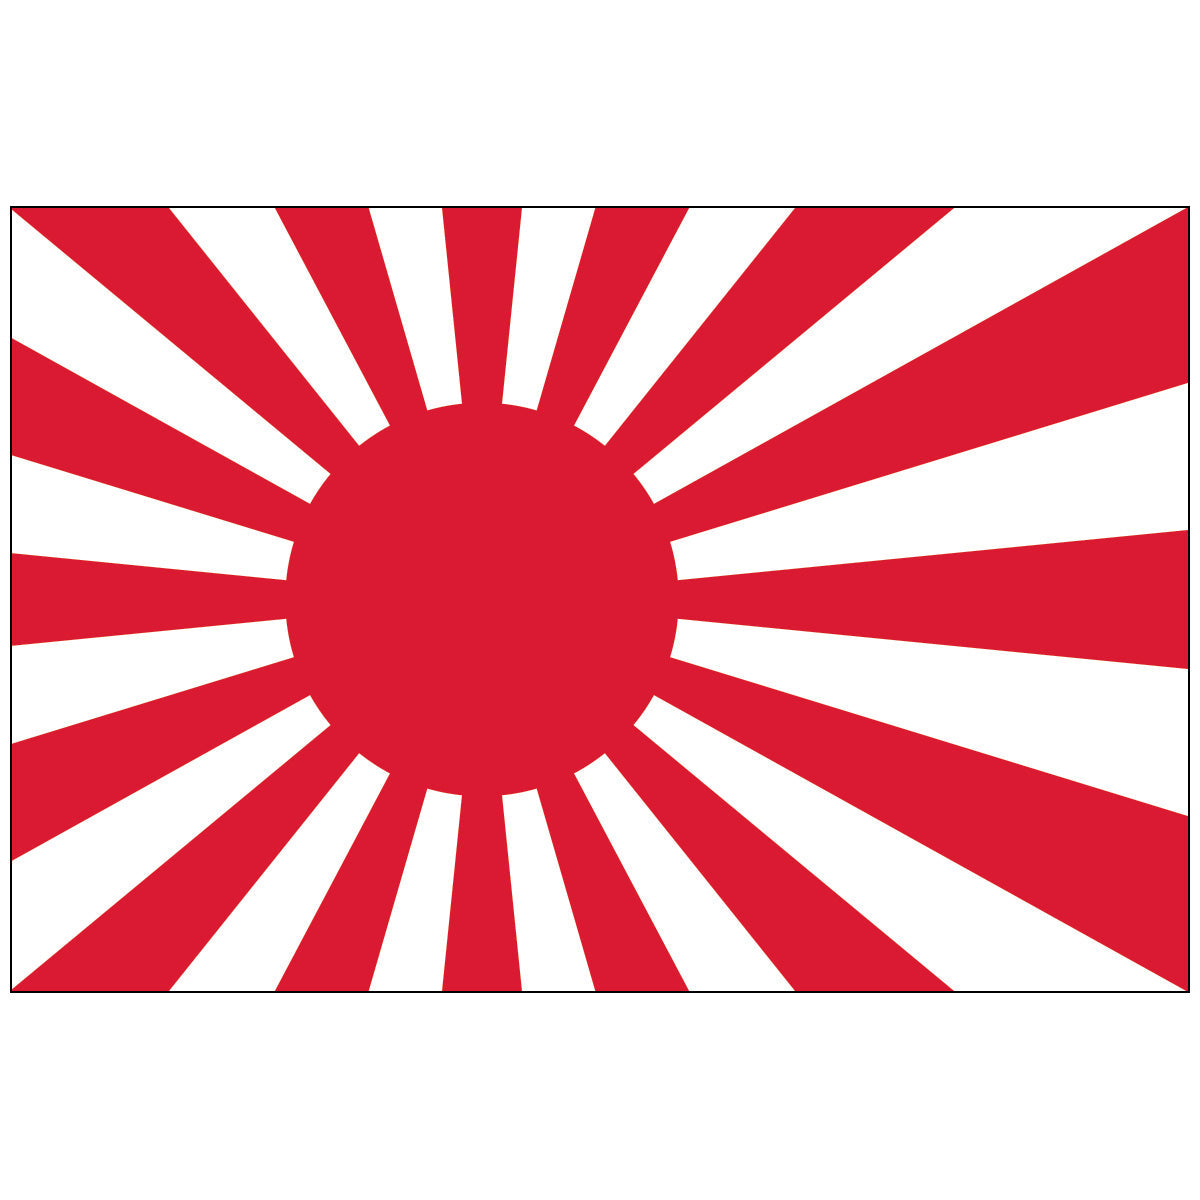 Japanese Ensign - Nylon World Flag